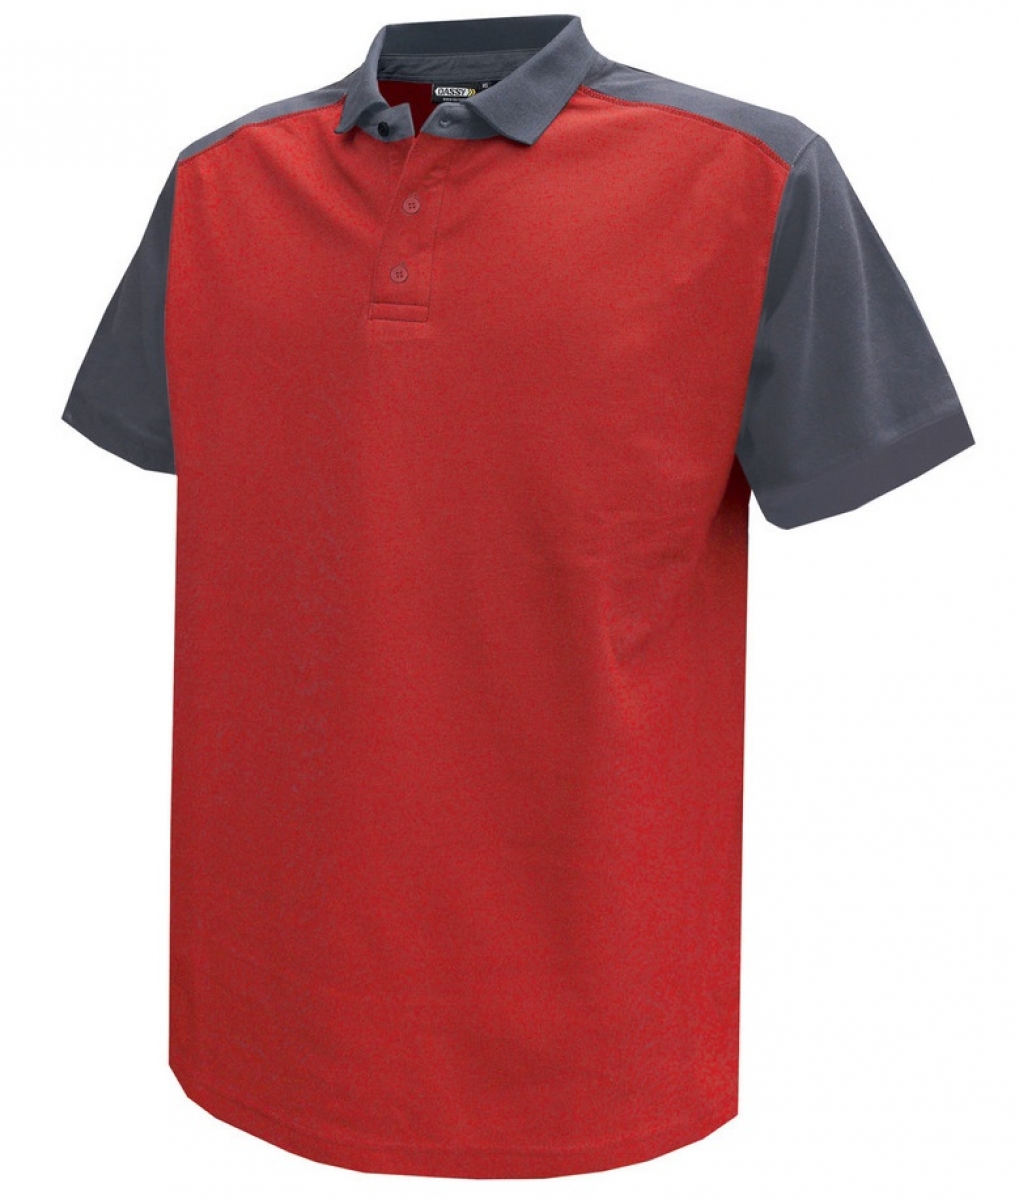 DASSY-Worker-Shirts, Poloshirt